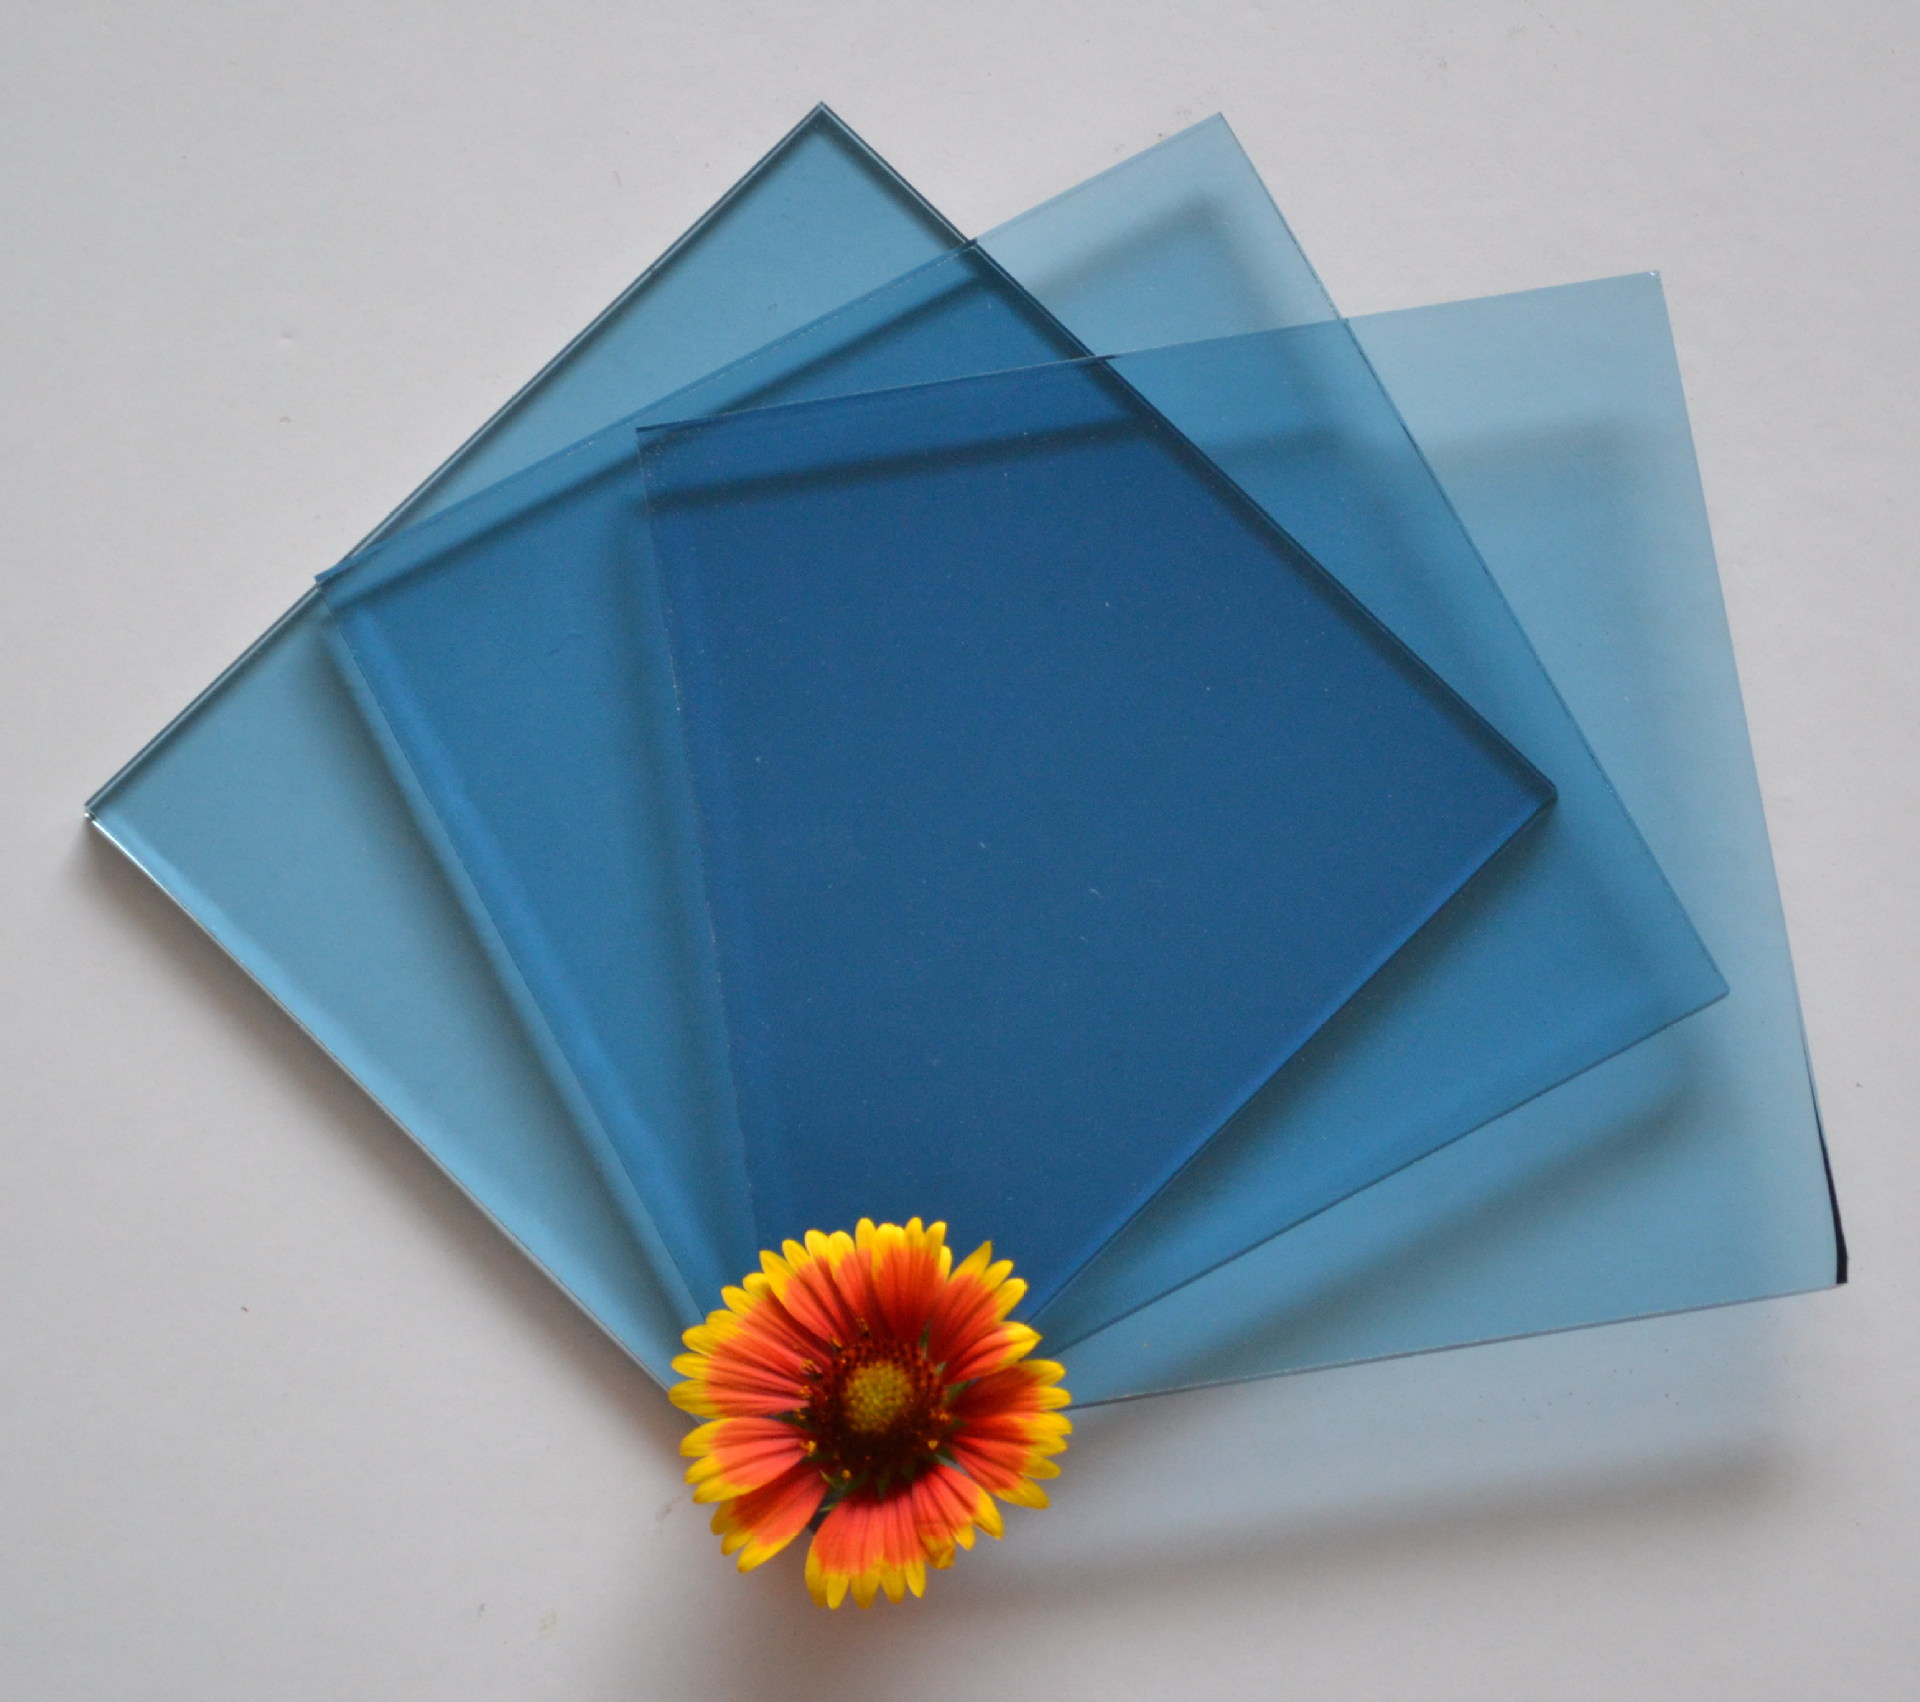 唐山市蓝欣玻璃有限公司-浮法玻璃,镀膜玻璃,颜色玻璃